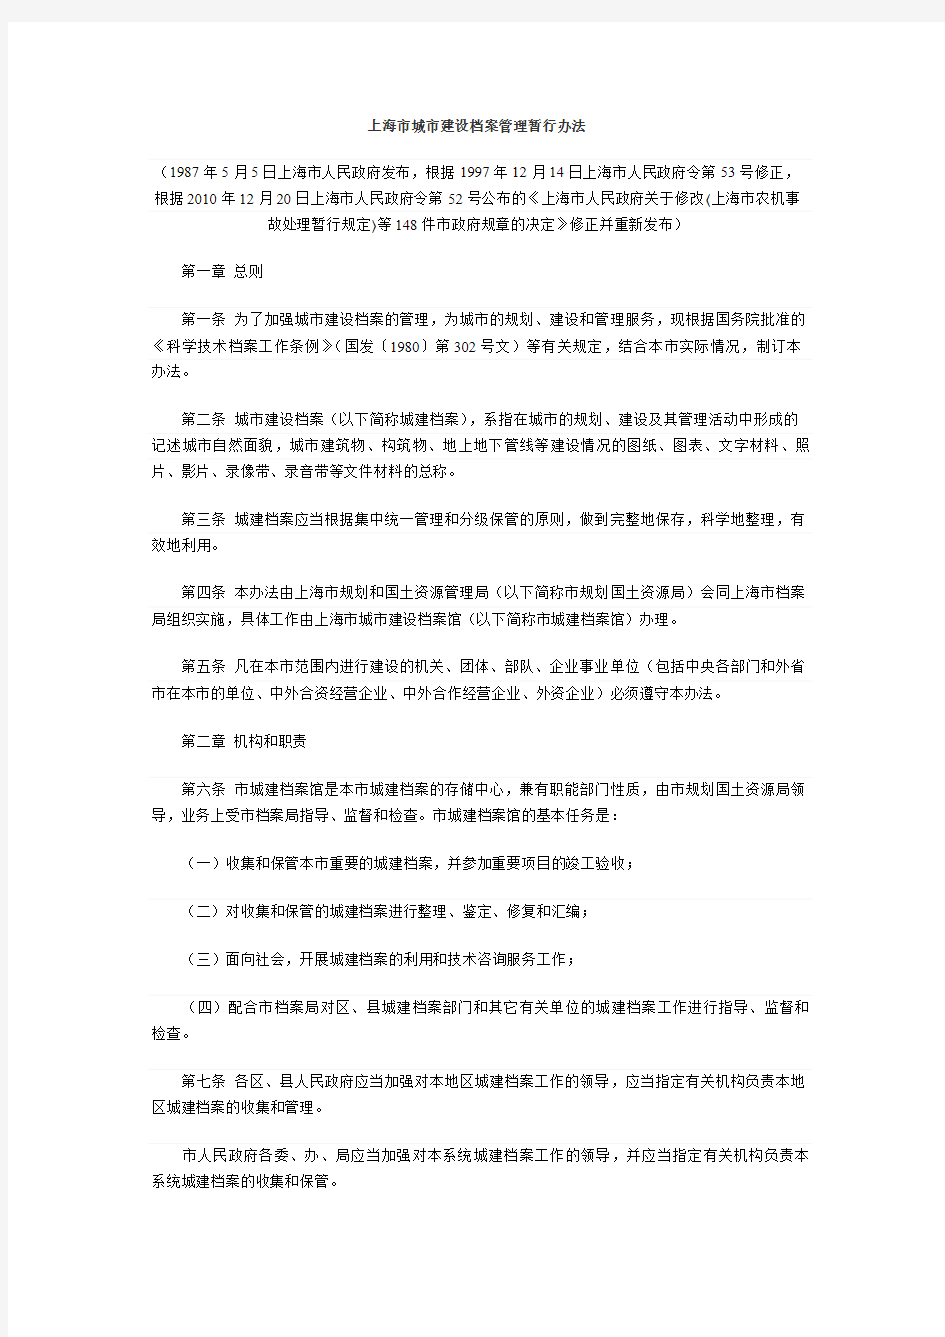 上海市城市建设档案管理暂行办法